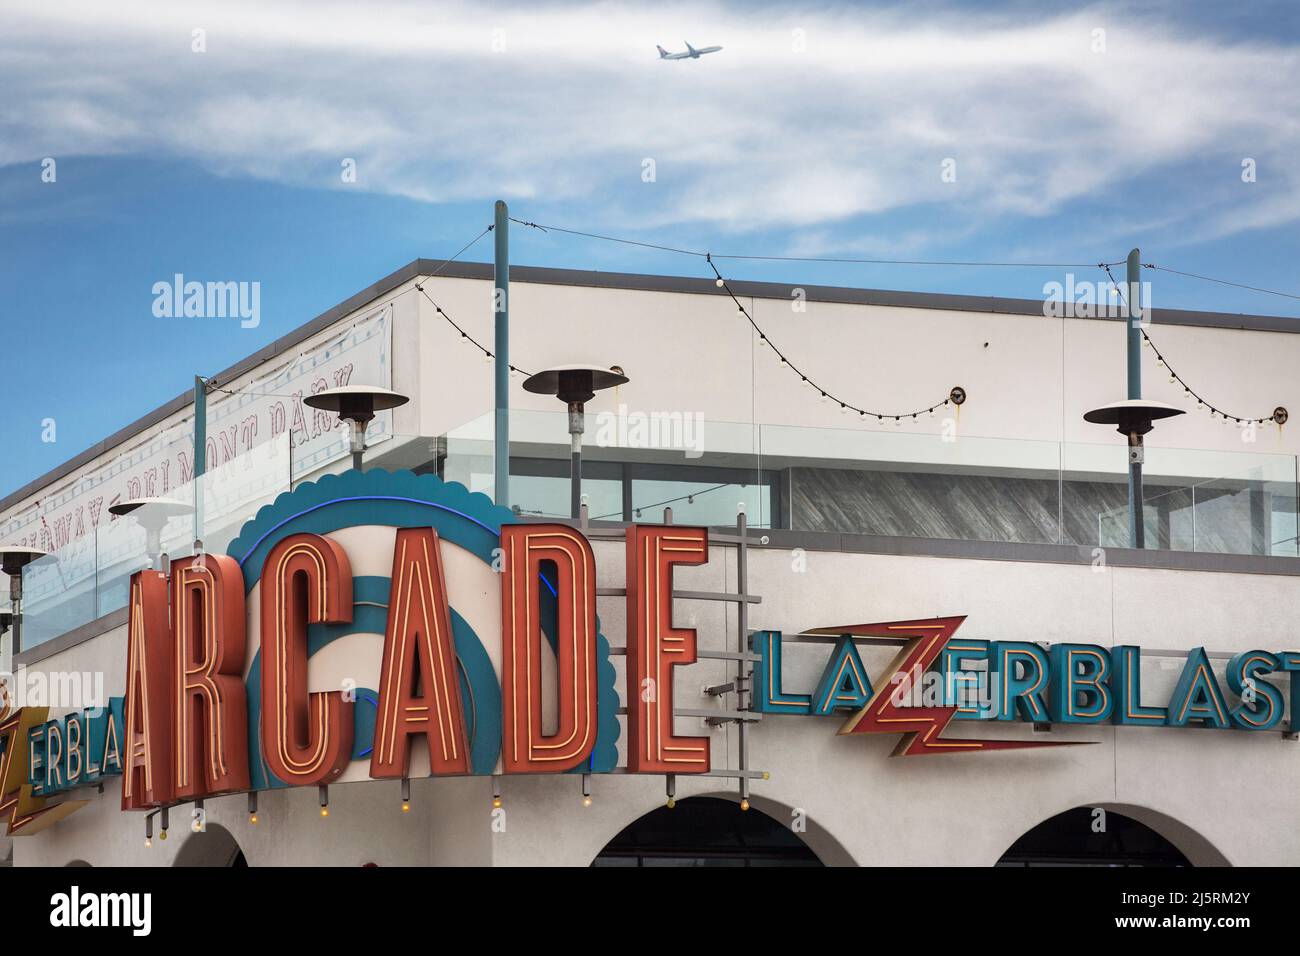 Nahaufnahme des Retro-Zeichens des virtuellen Spielzimmers der Lazerblast Arcade im Belmont-Vergnügungspark, Mission Bay Stockfoto